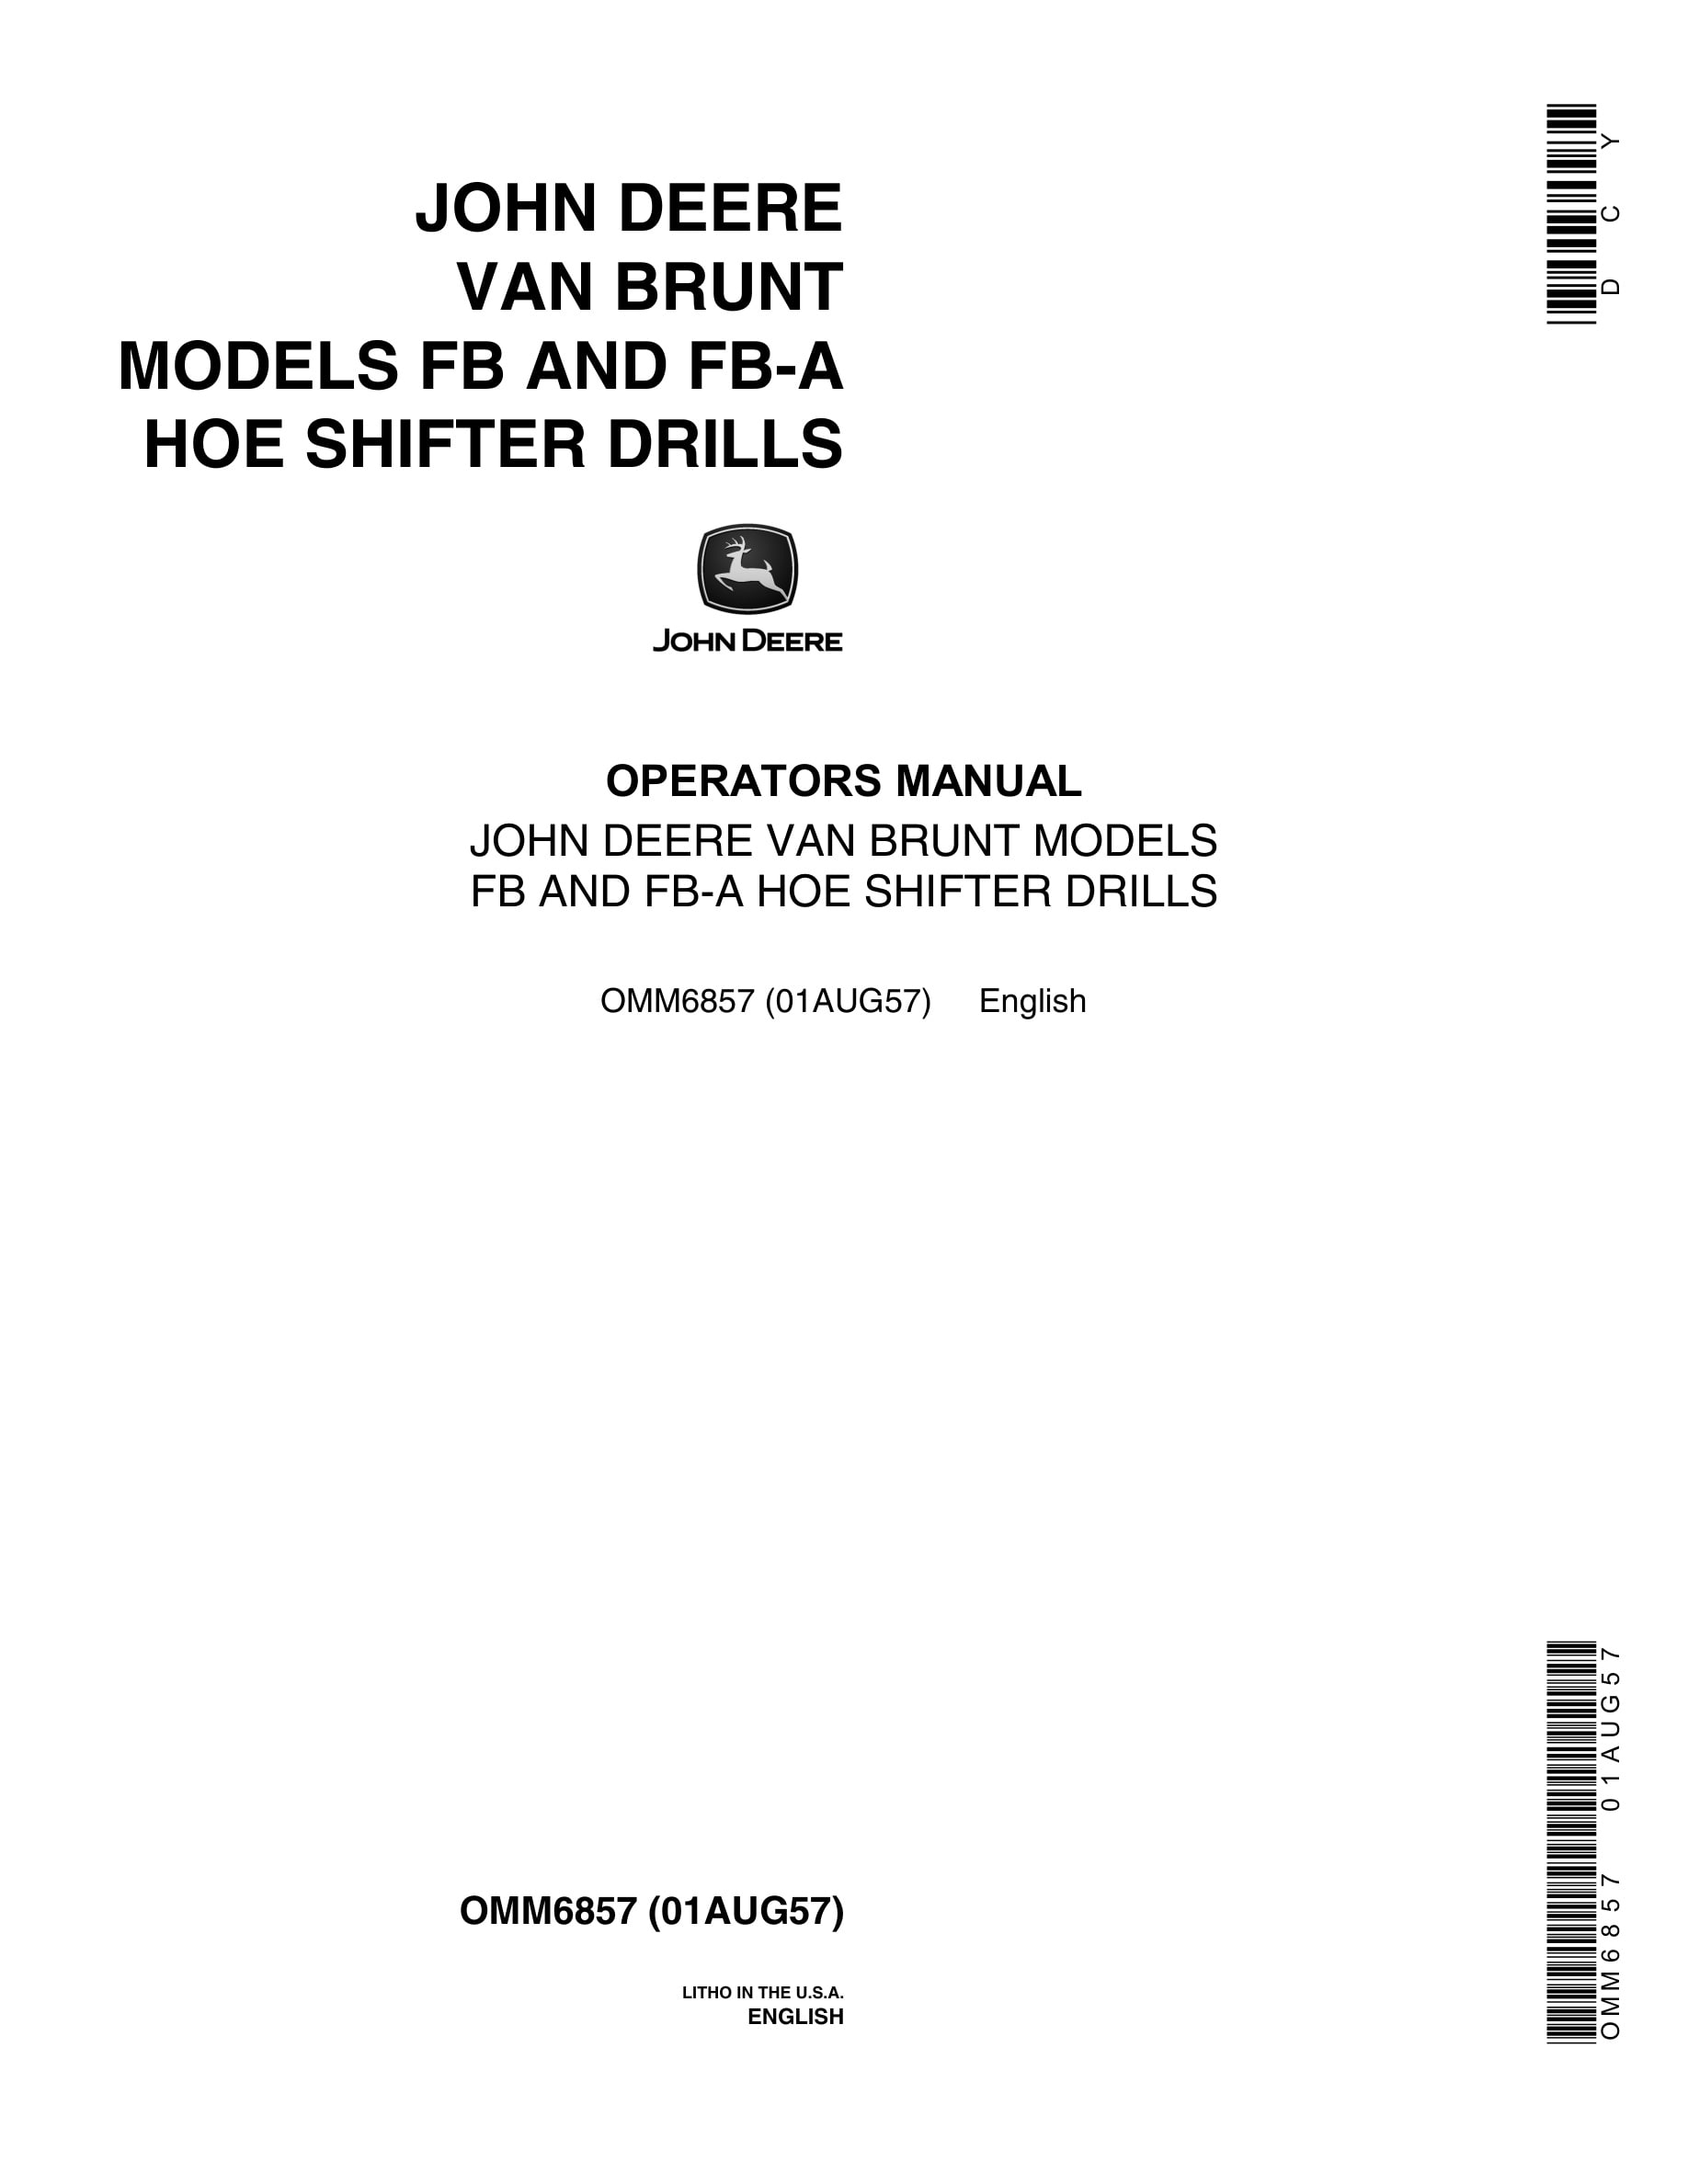 John Deere VAN BRUNT MODELS FB AND FB-A HOE SHIFTER DRILL Operator Manual OMM6857-1